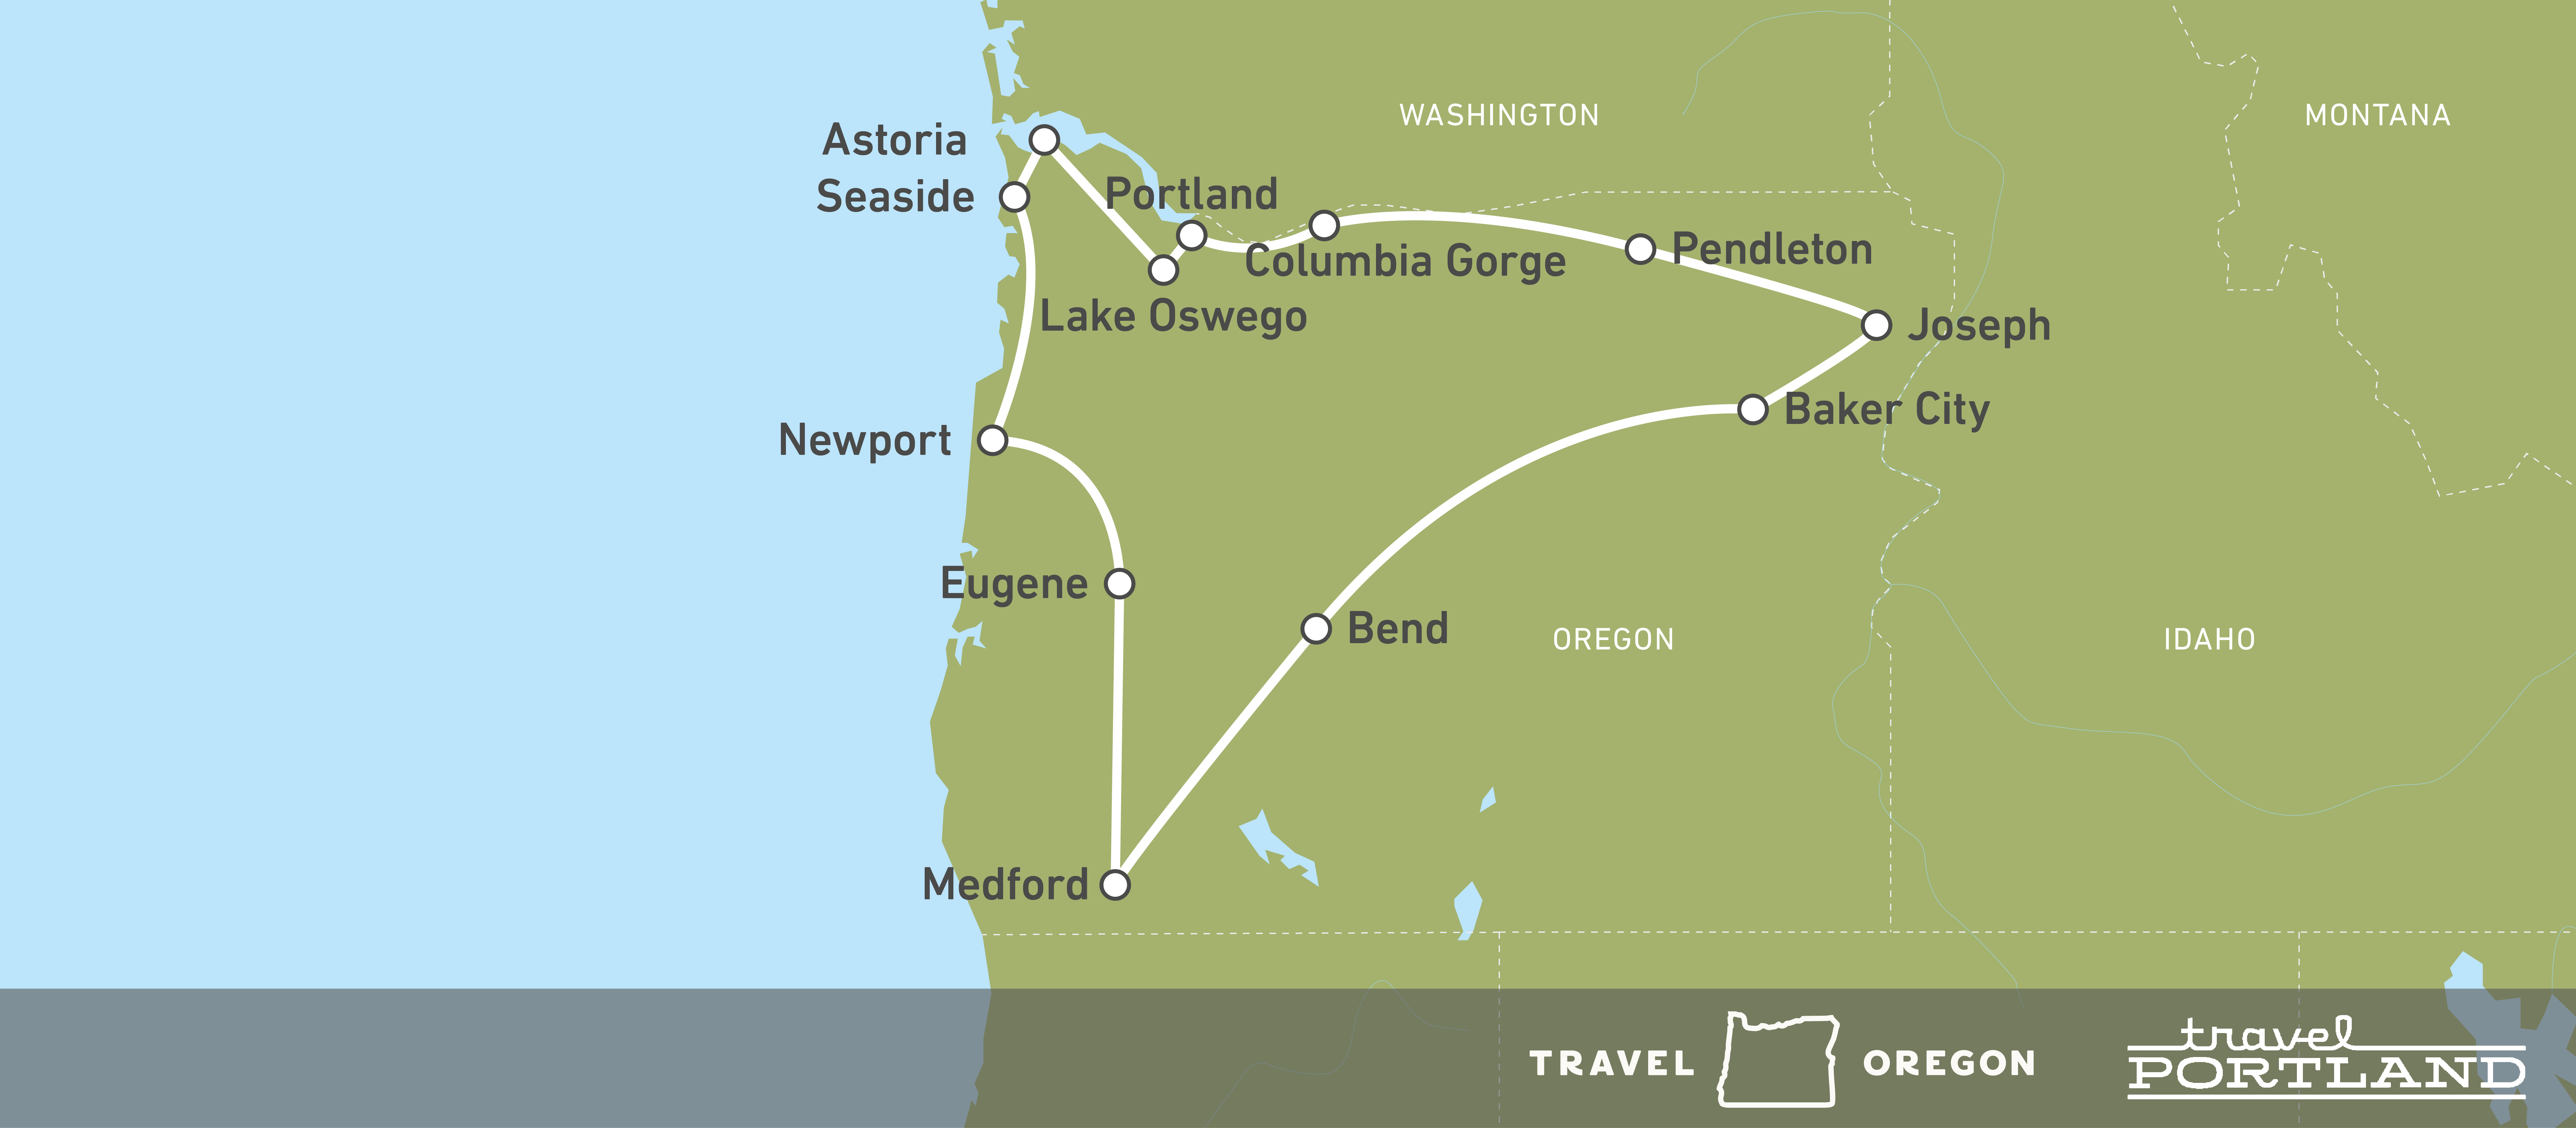 Oregon Portland Auf Einer 16 igen Reise Erleben Canusa